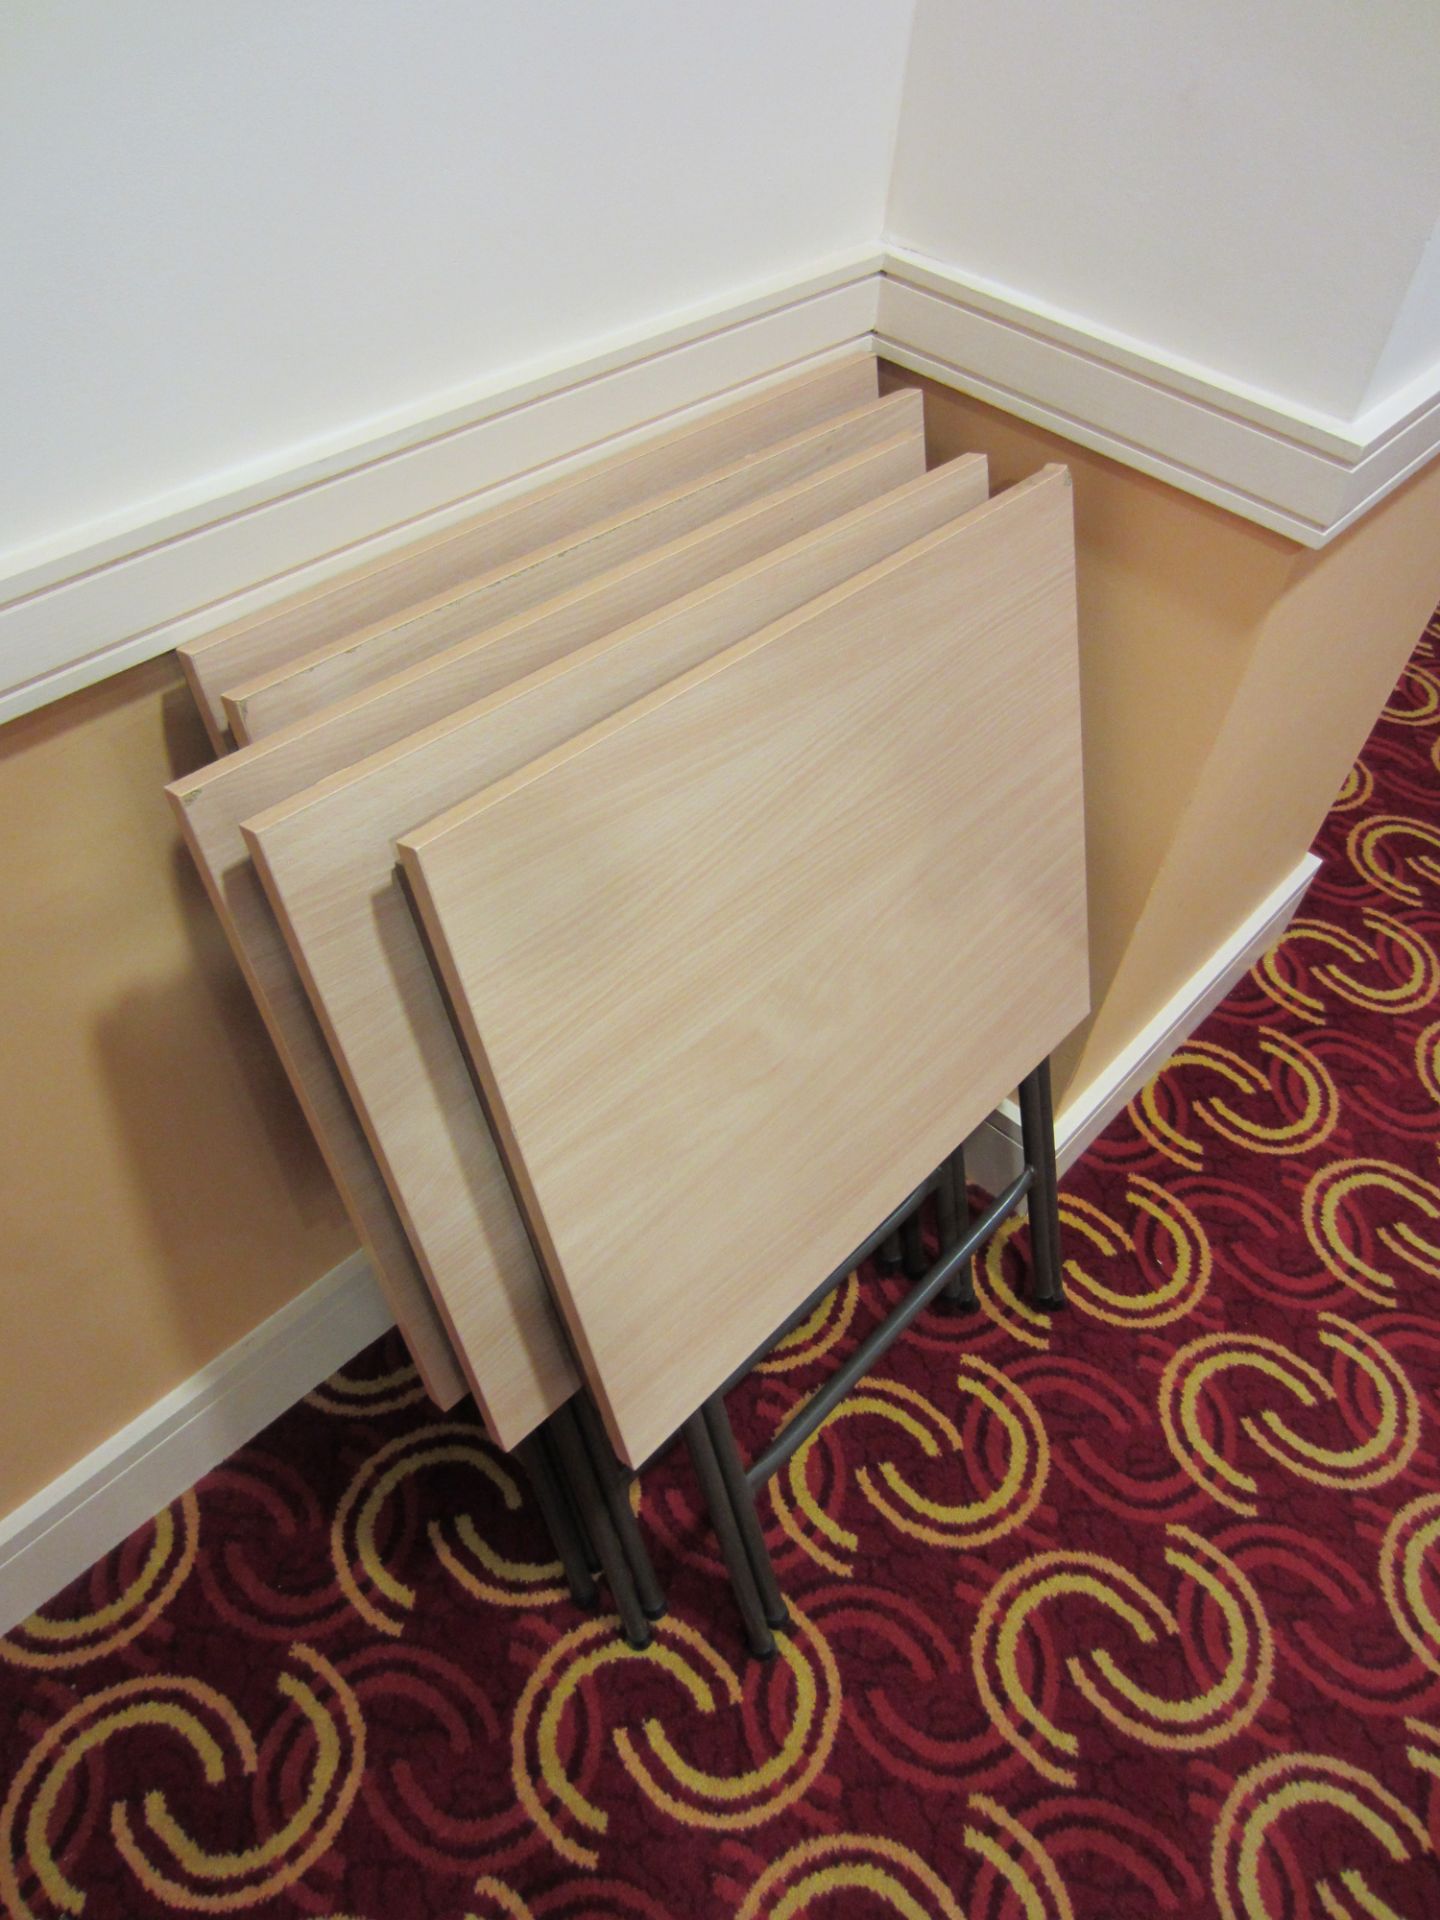 Approx 30 Woodgrain Laminate School Type Tables on Folding Steel Legs 600mm x 500mm